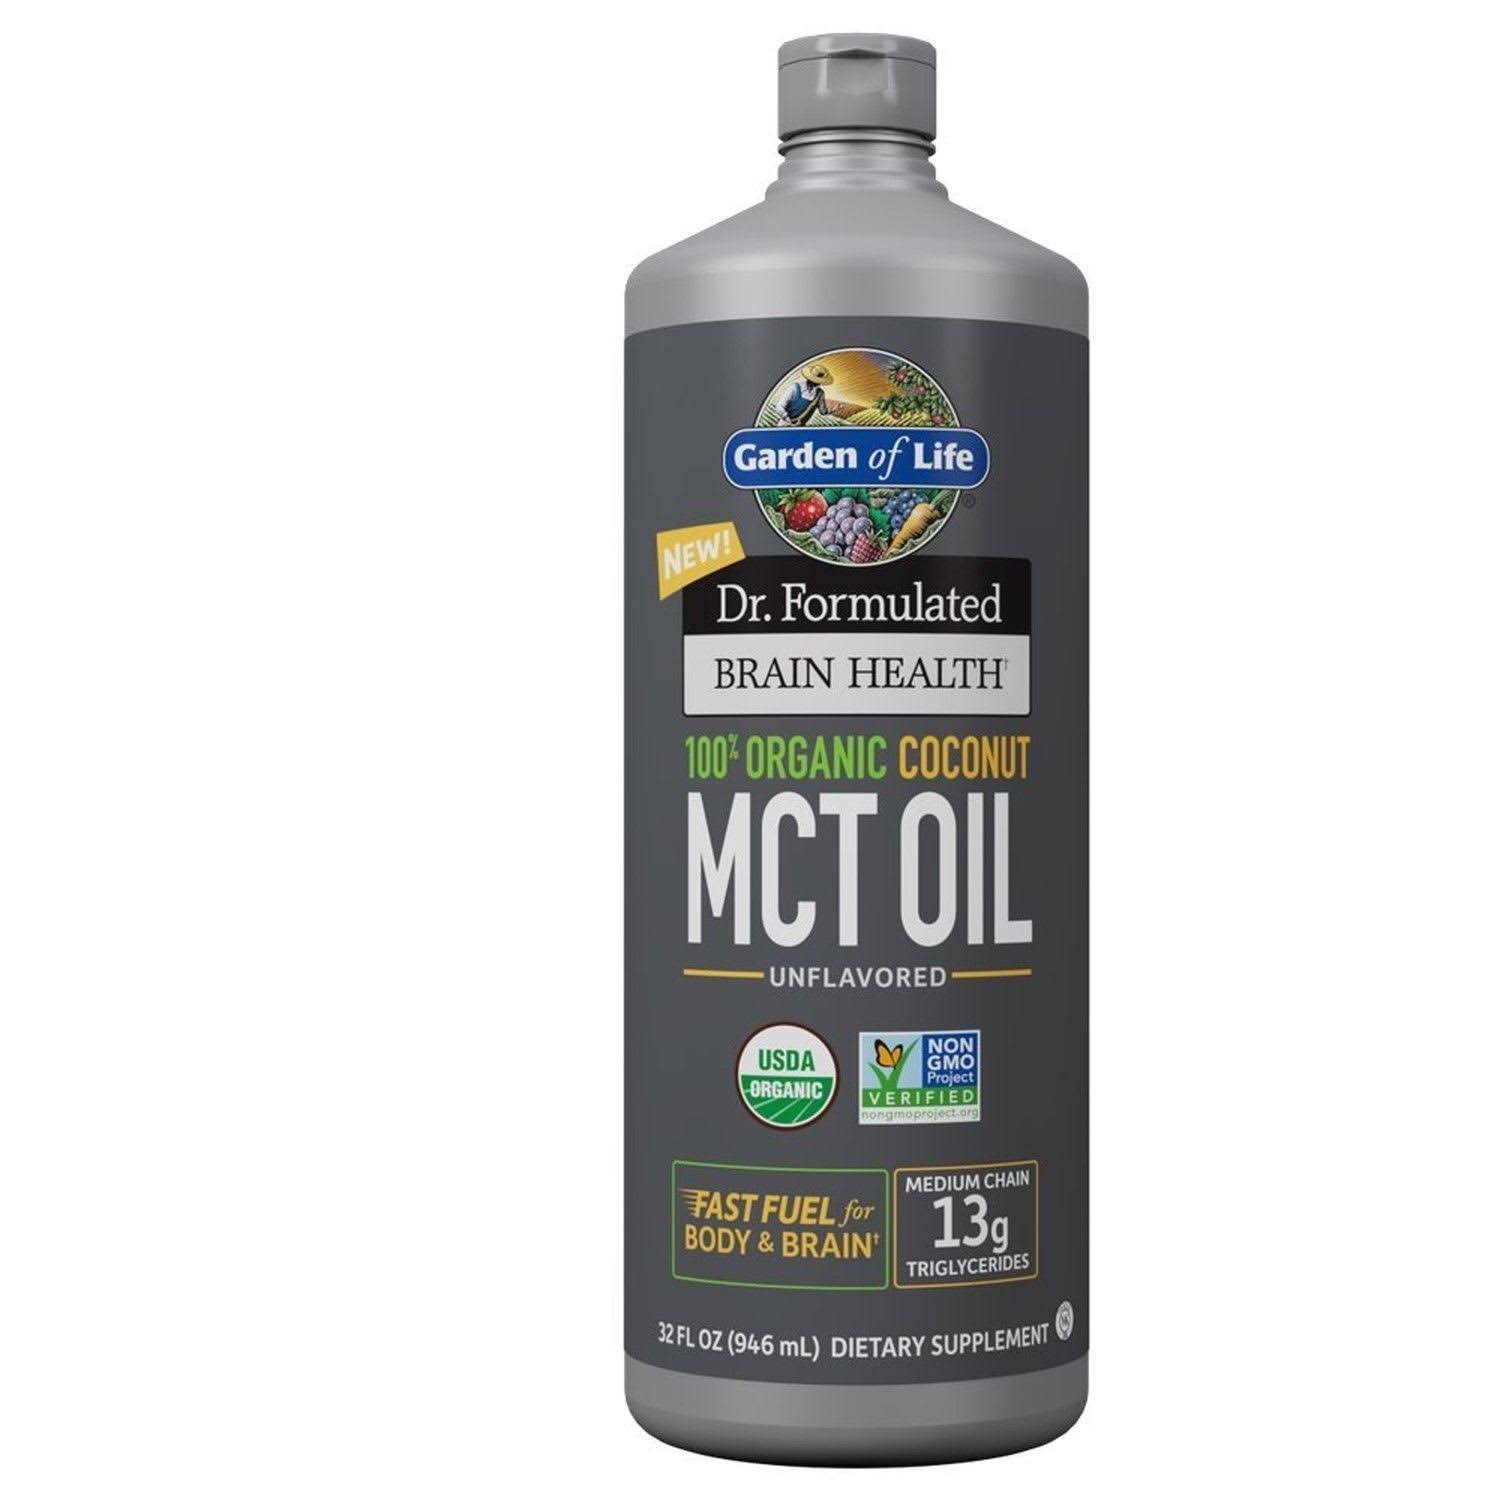 Garden of Life Dr. Formulated 100% Organic Coconut MCT Oil, 32 Fluid Ounces